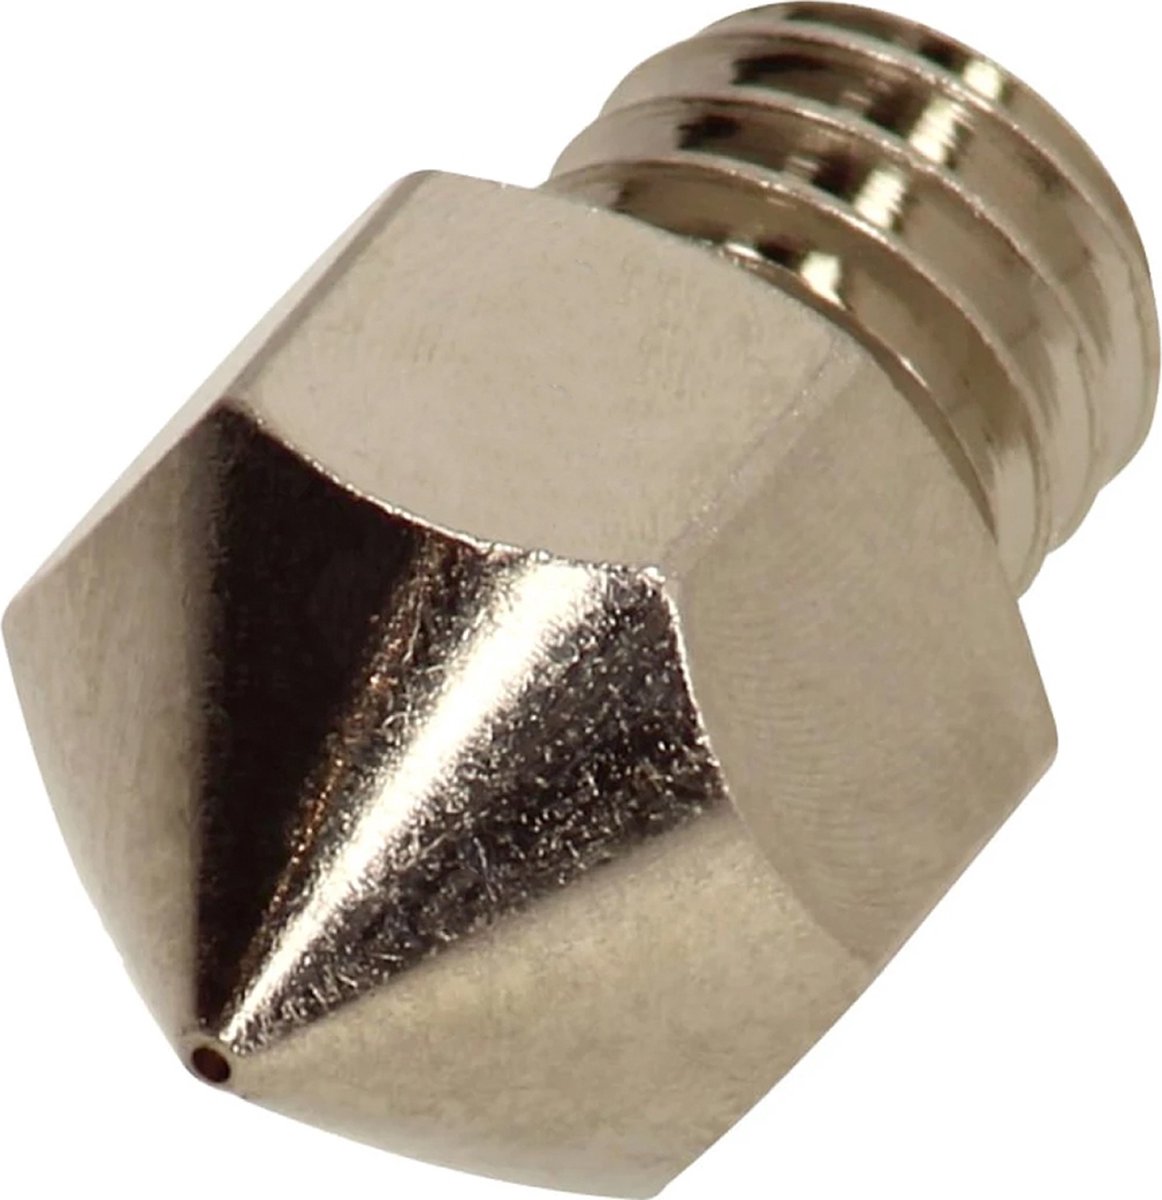 Superlab – MK8/CR6-SE plated copper Nozzle